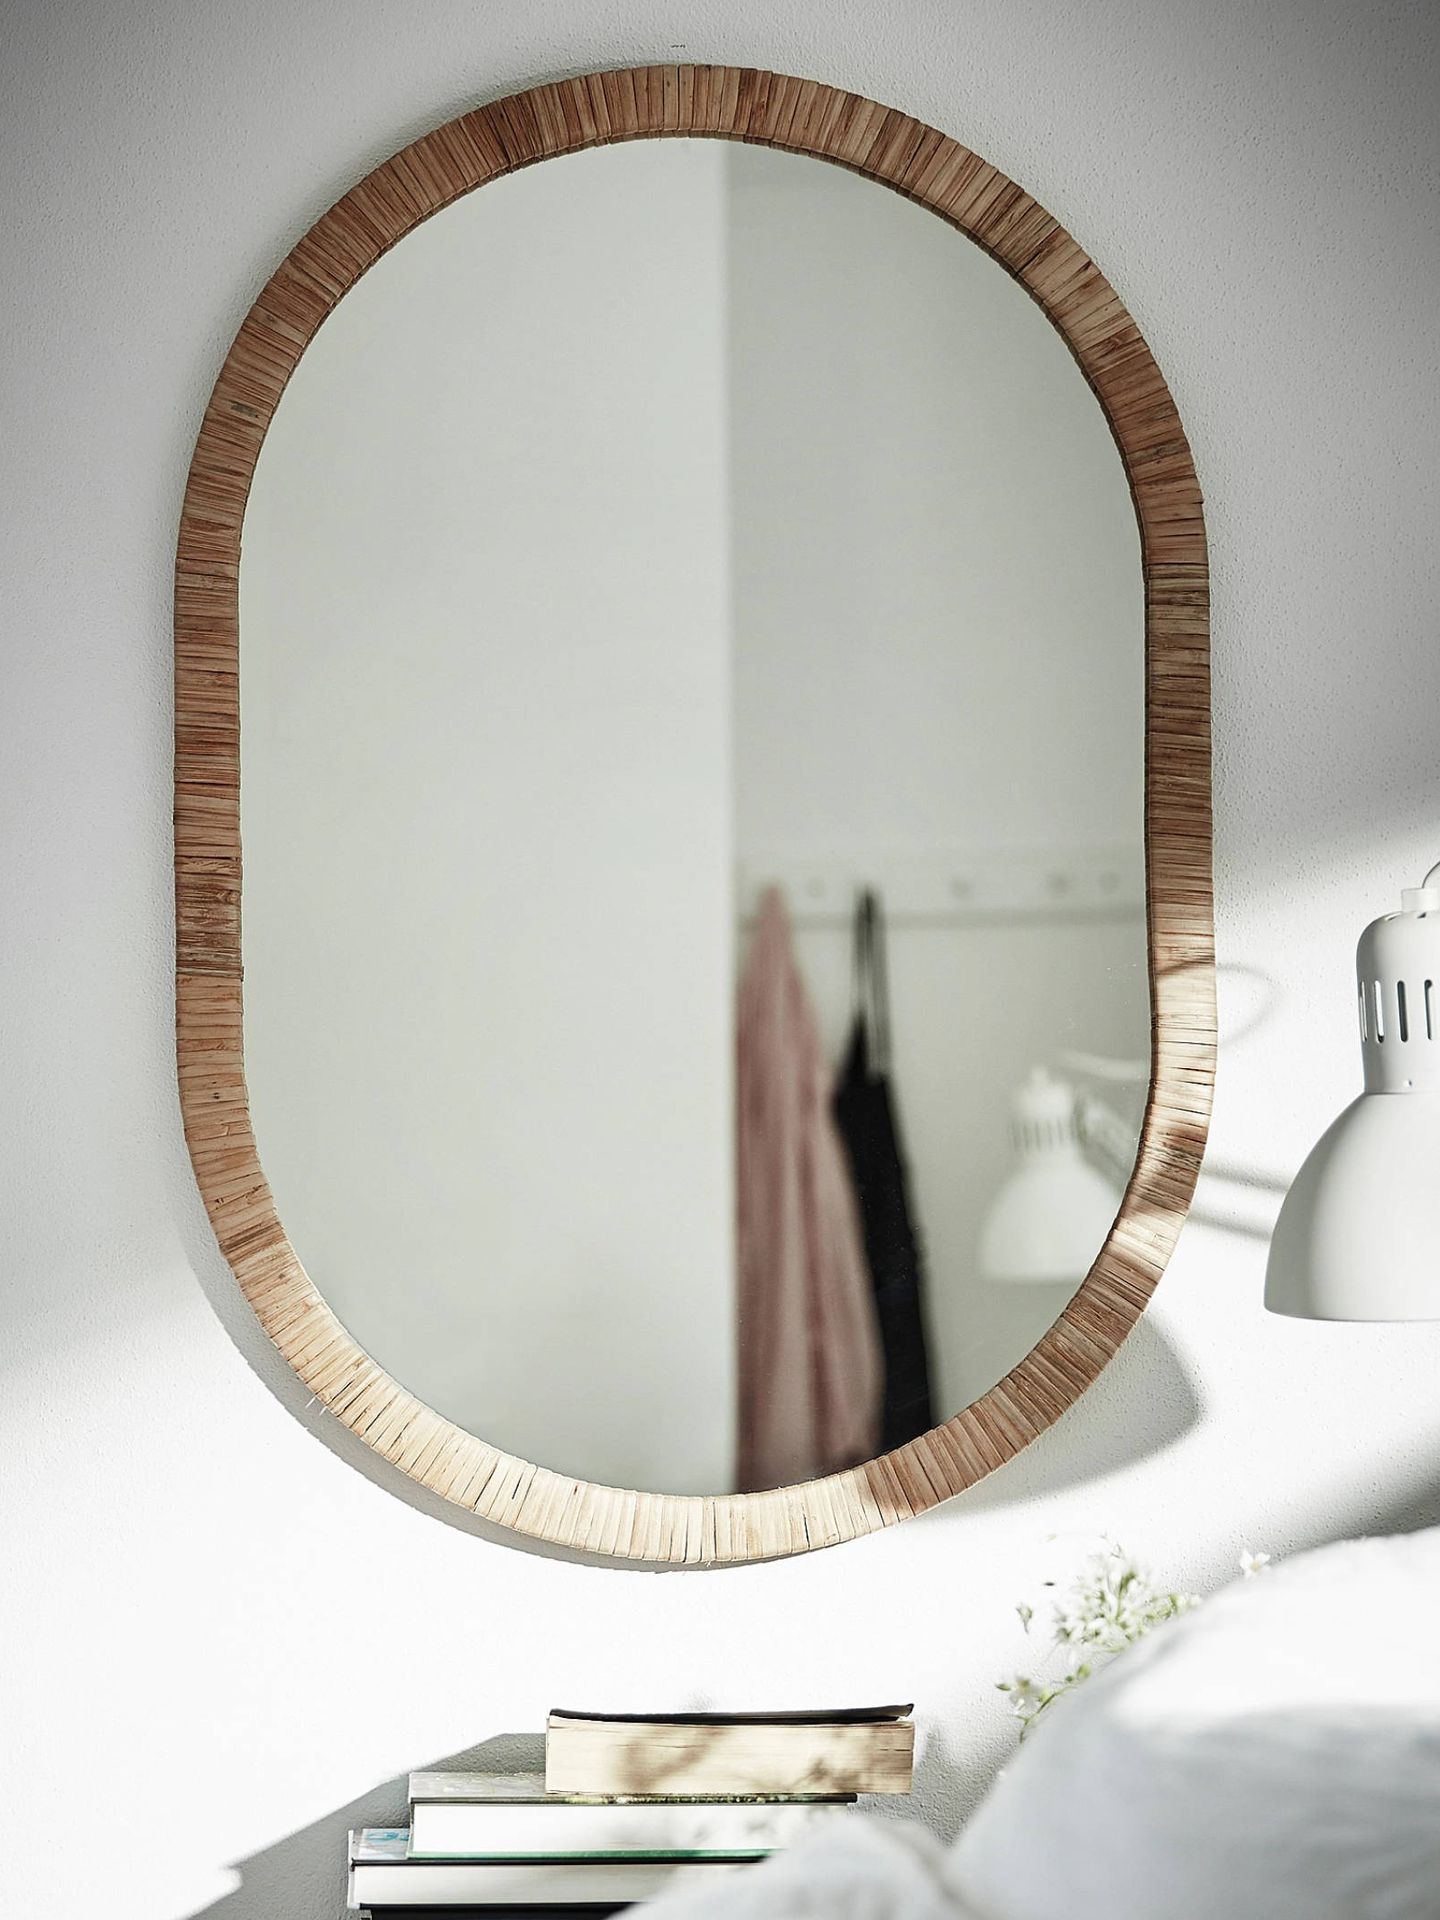 Decora tu casa con estos espejos de Ikea. (Cortesía)